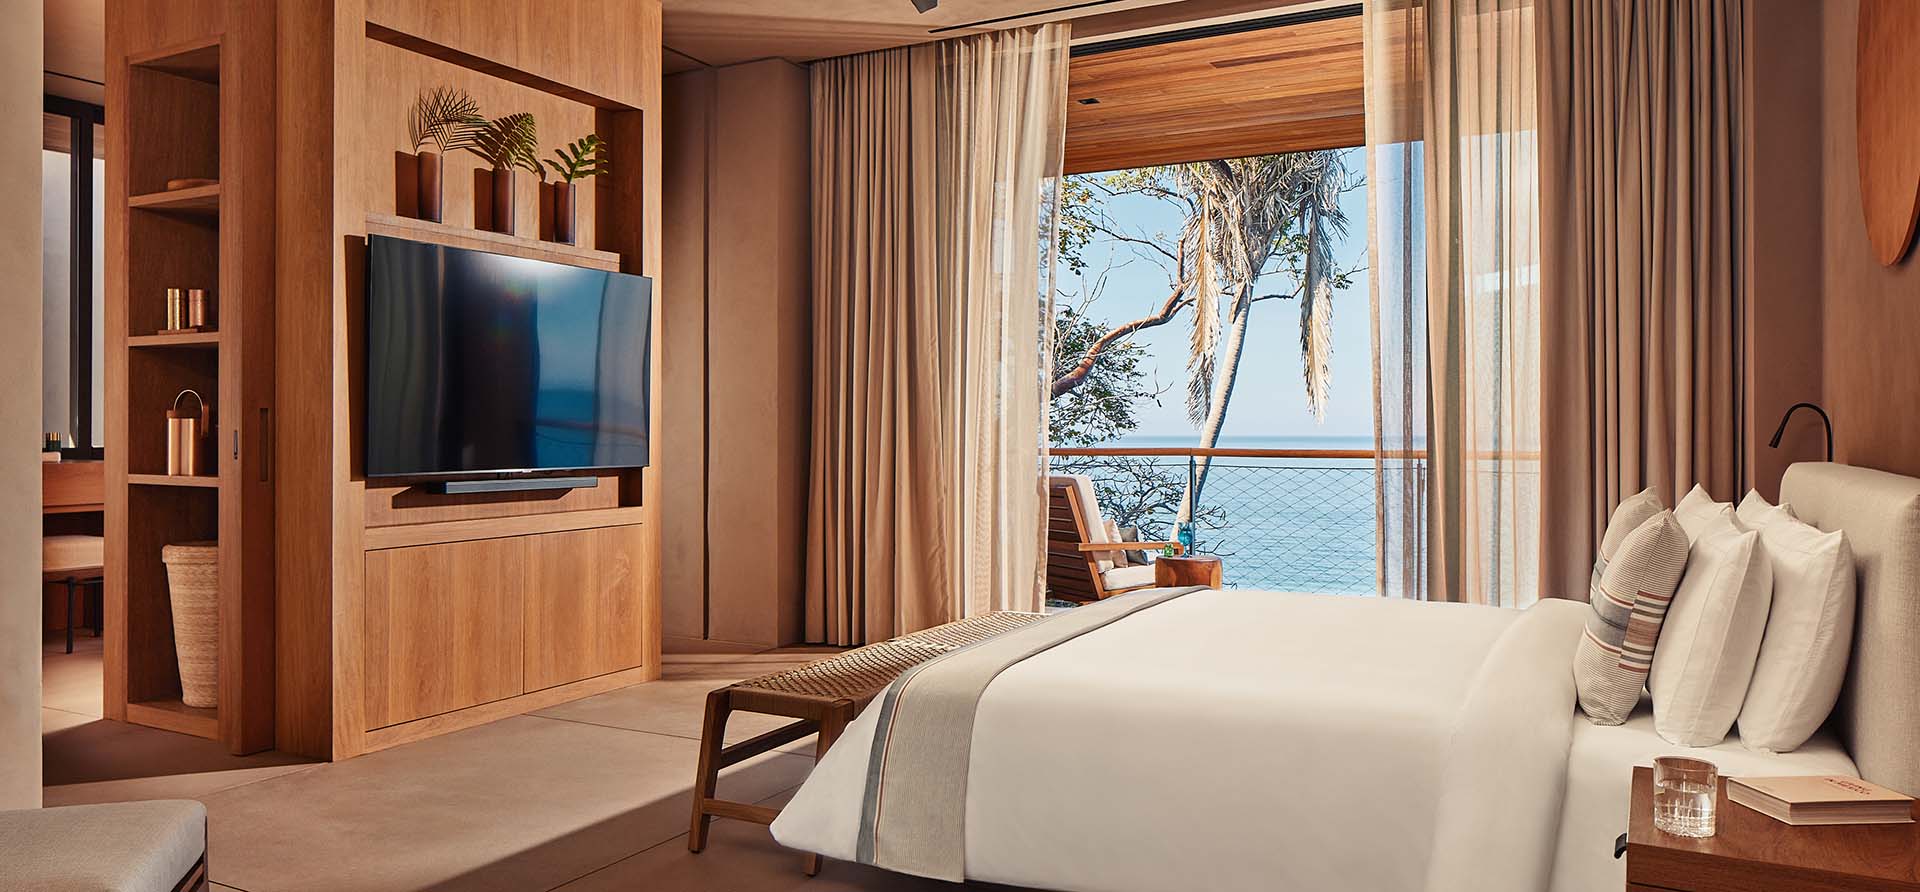 bedroom with ocean view